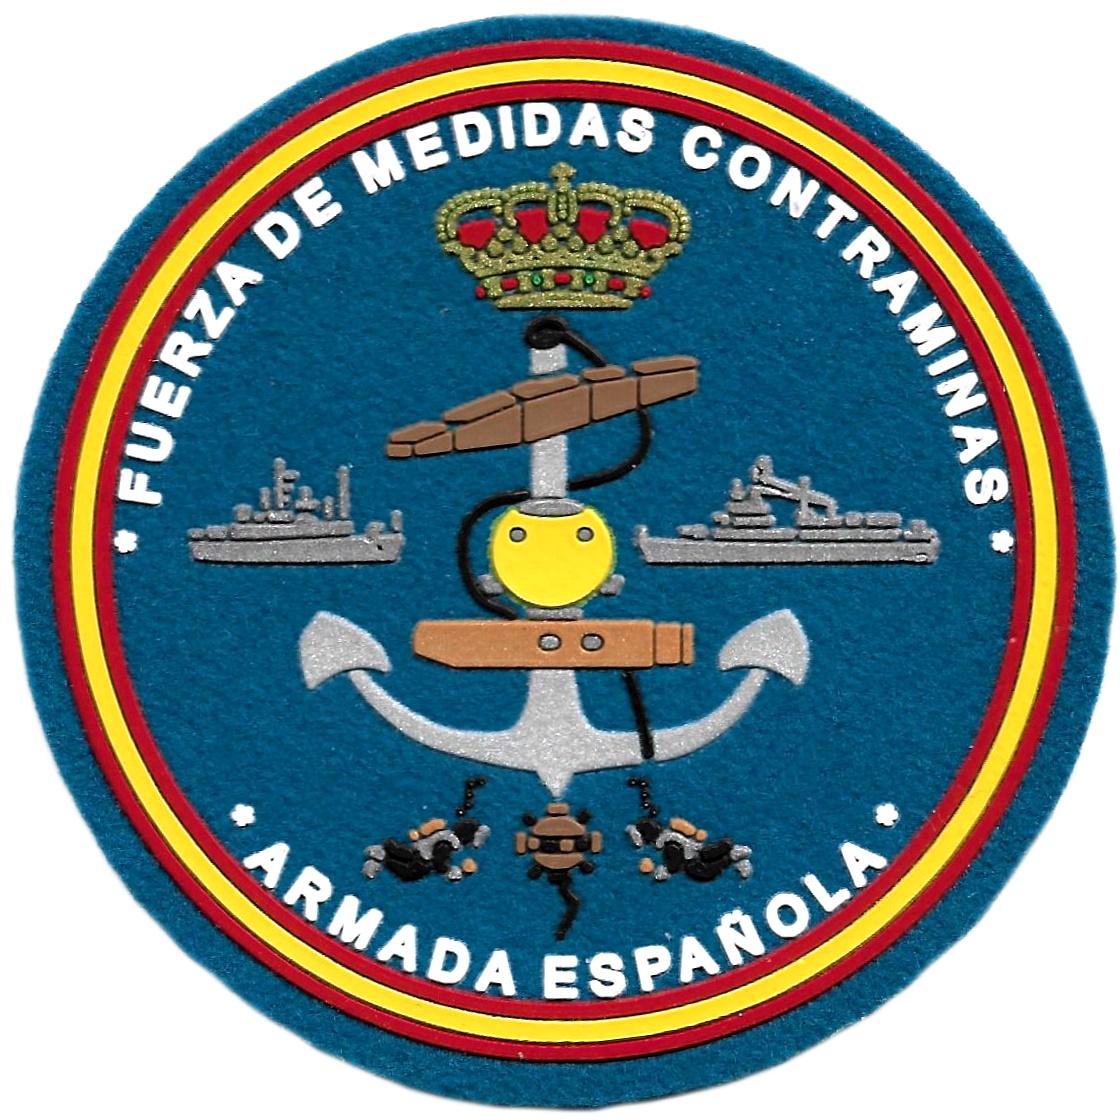 Armada Española Fuerza de medidas contraminas parche insignia emblema distintivo del ejército 